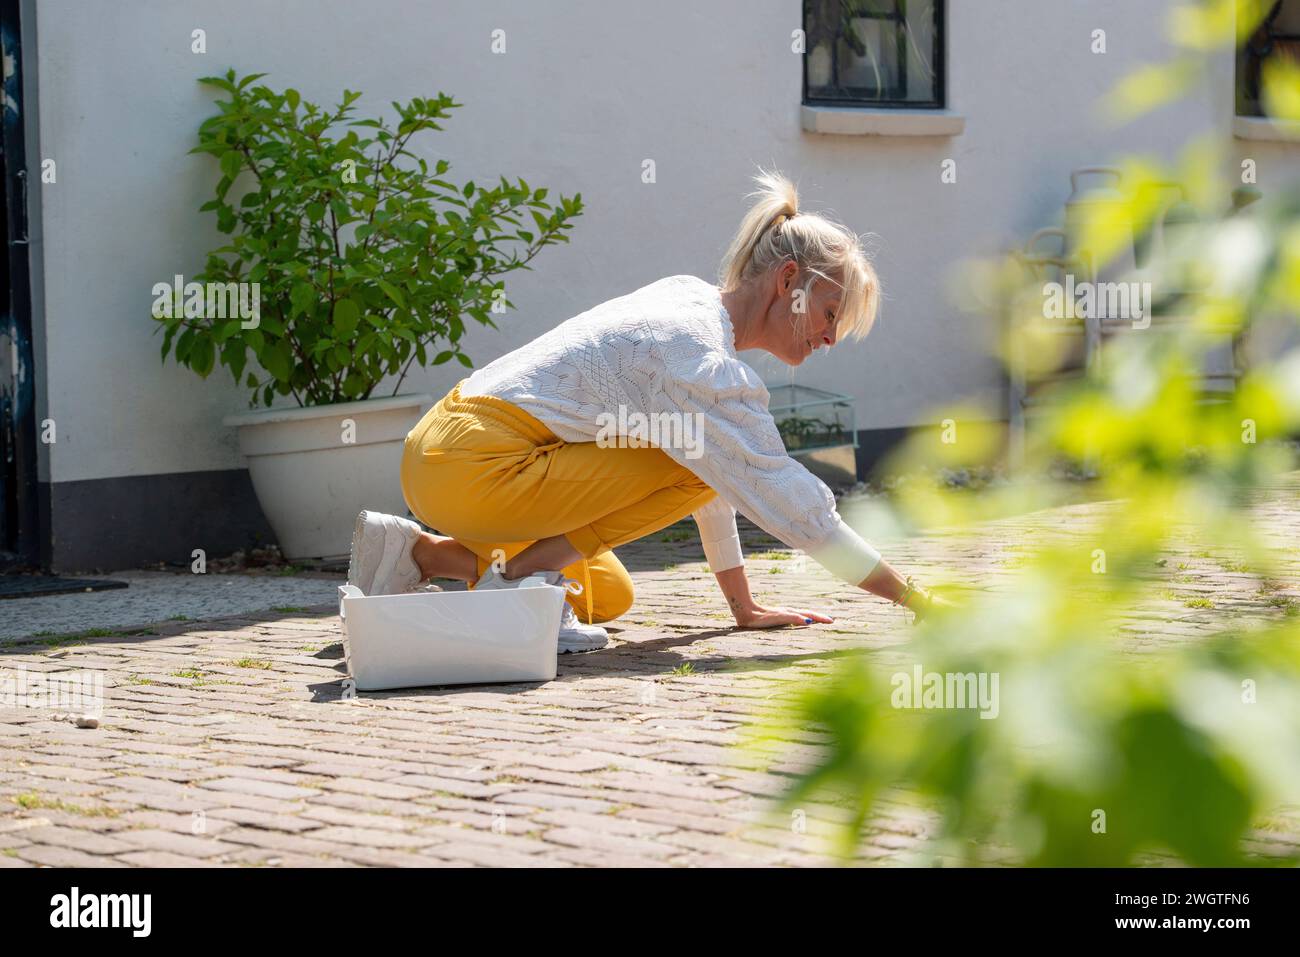 Attraktive Frau, die am Wochenende in ihrer Freizeit im Garten arbeitet und den Weg der Unkrautjäte pflegt. Stockfoto